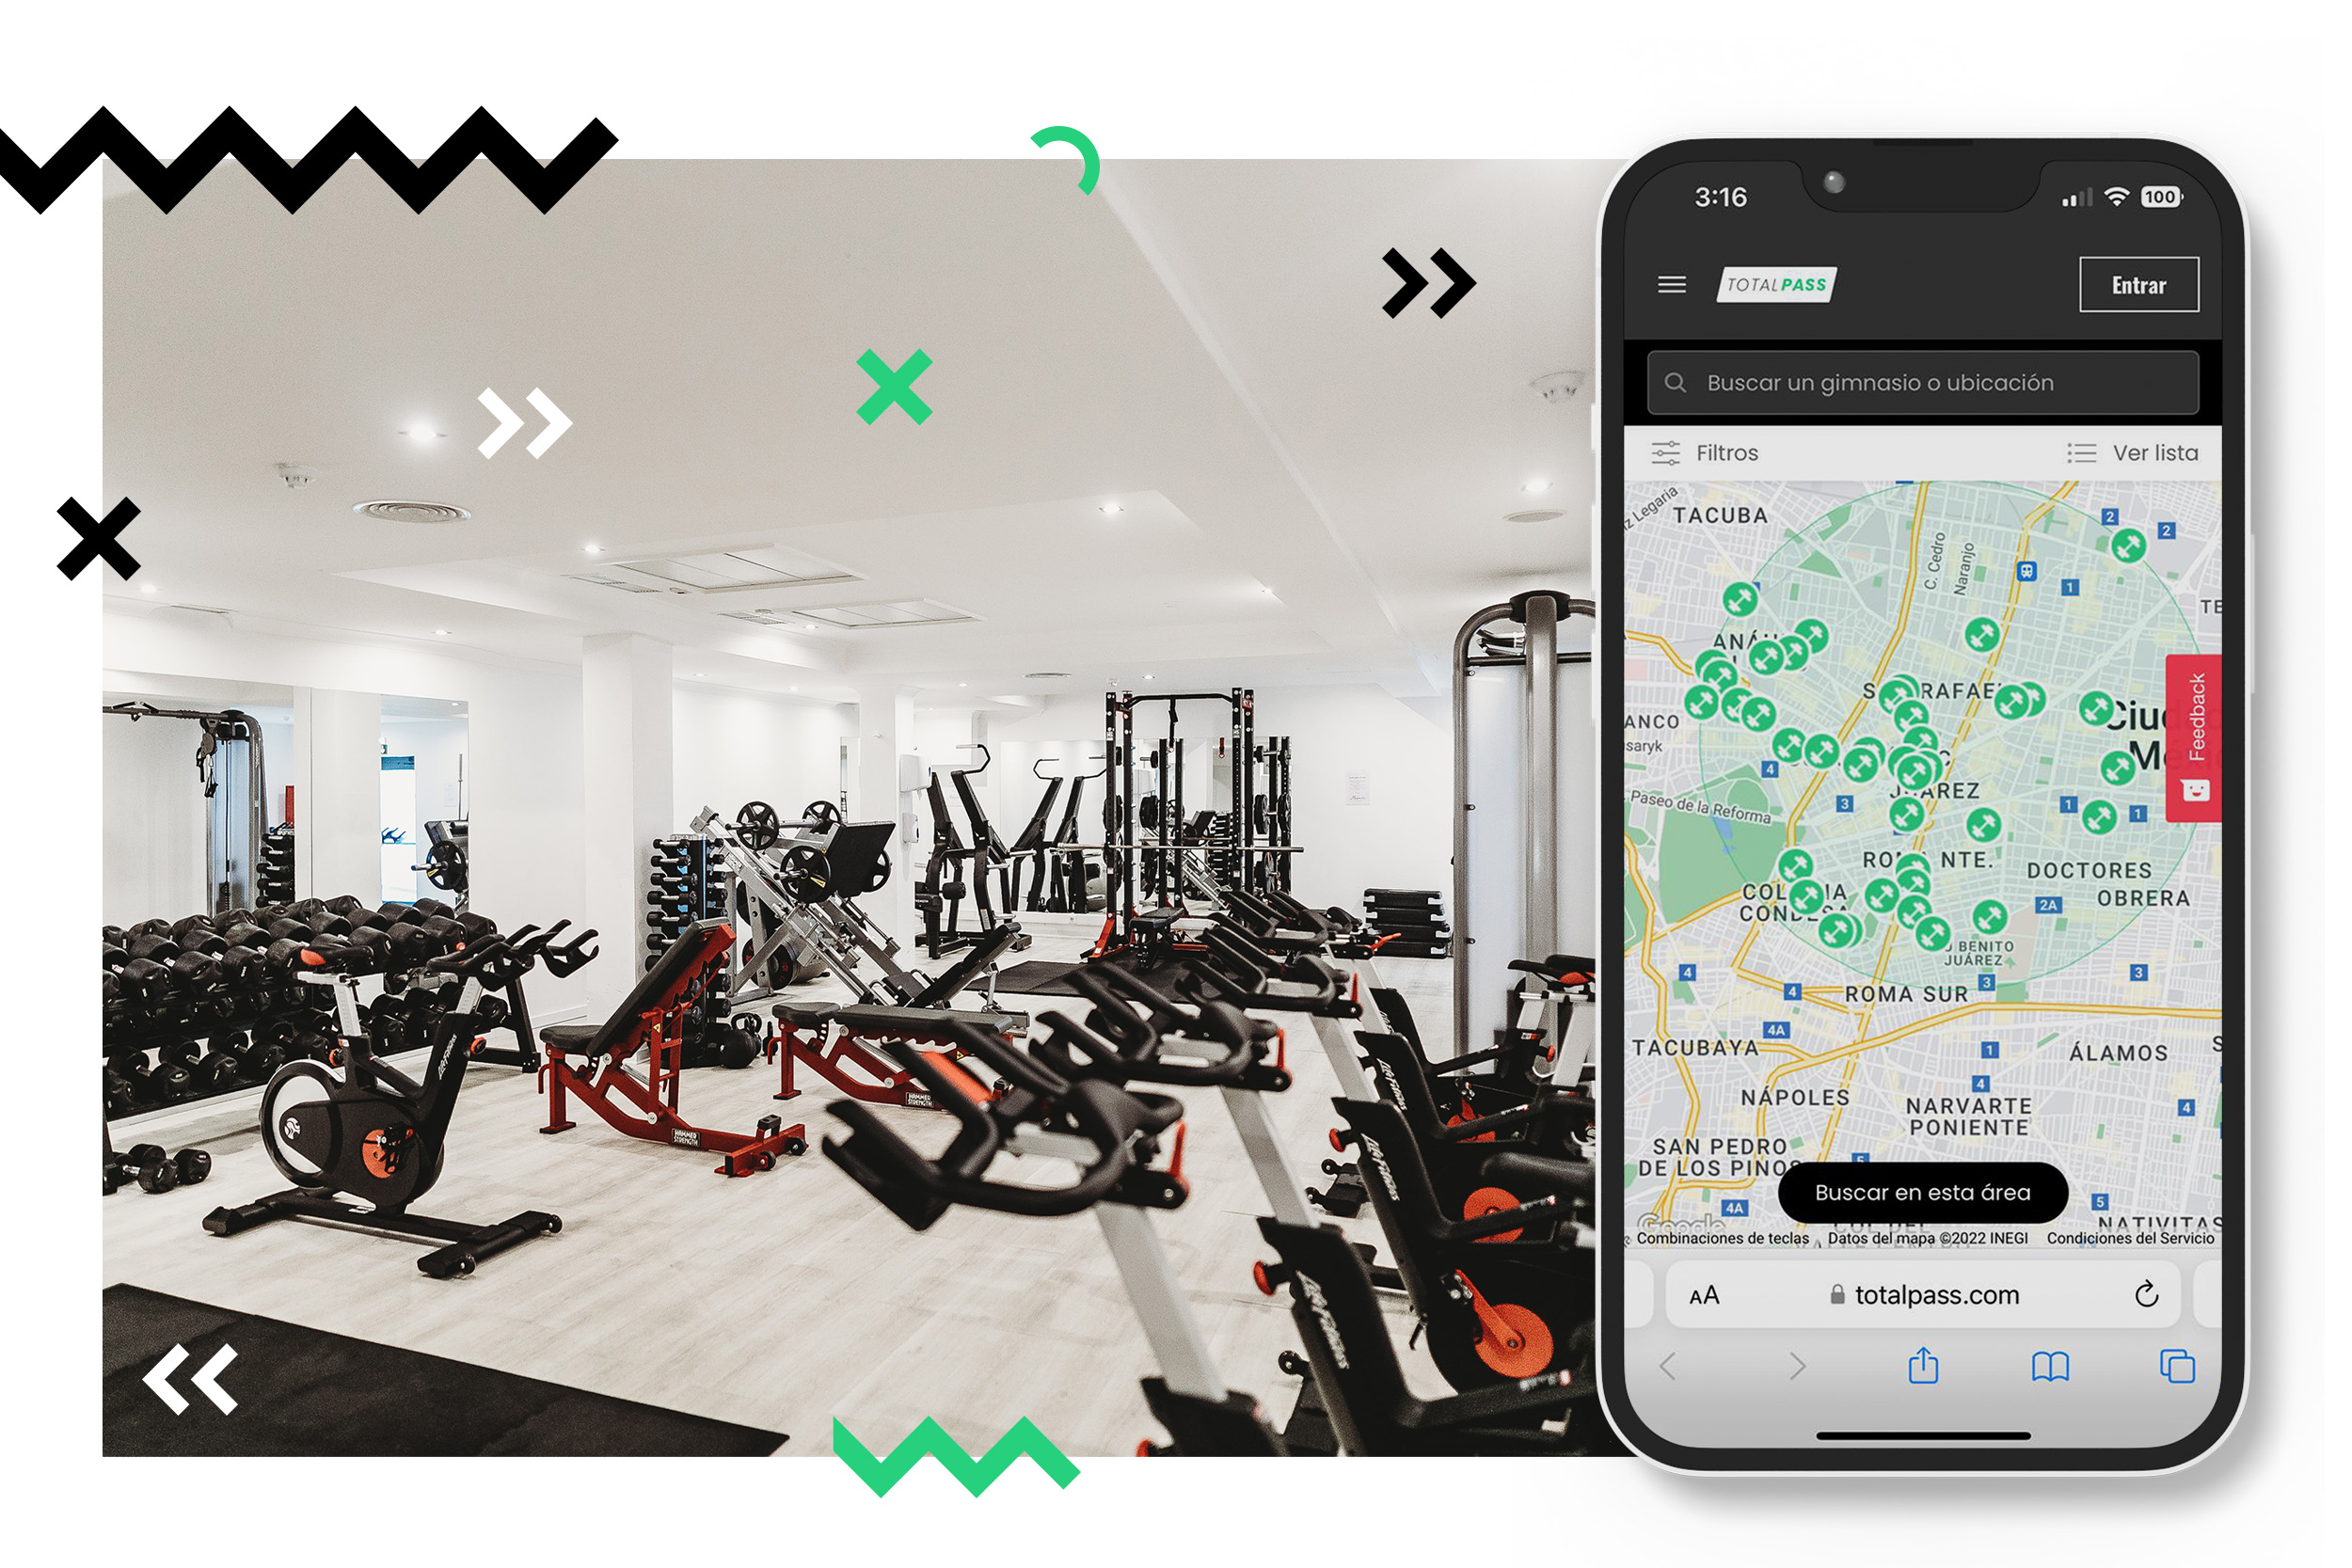 TotalPass, da Smart Fit, ganha musculatura para desafiar a Gympass